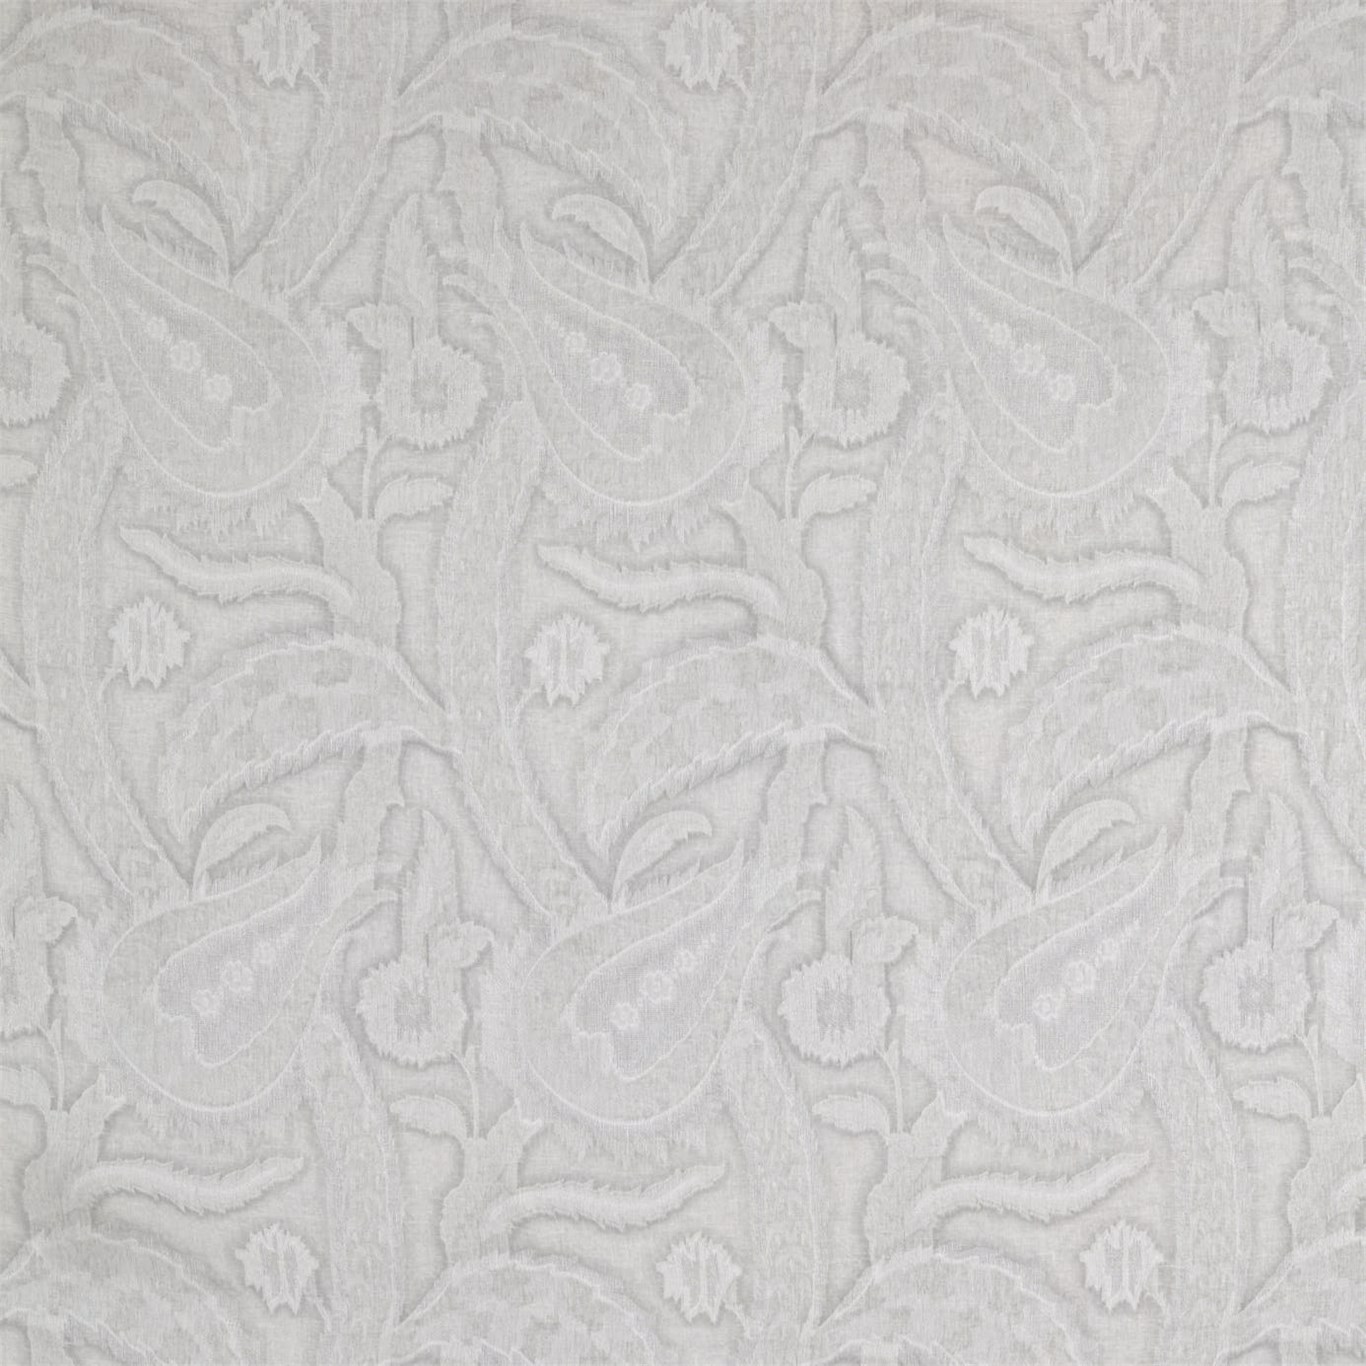 Oberon Stone Fabric by ZOF